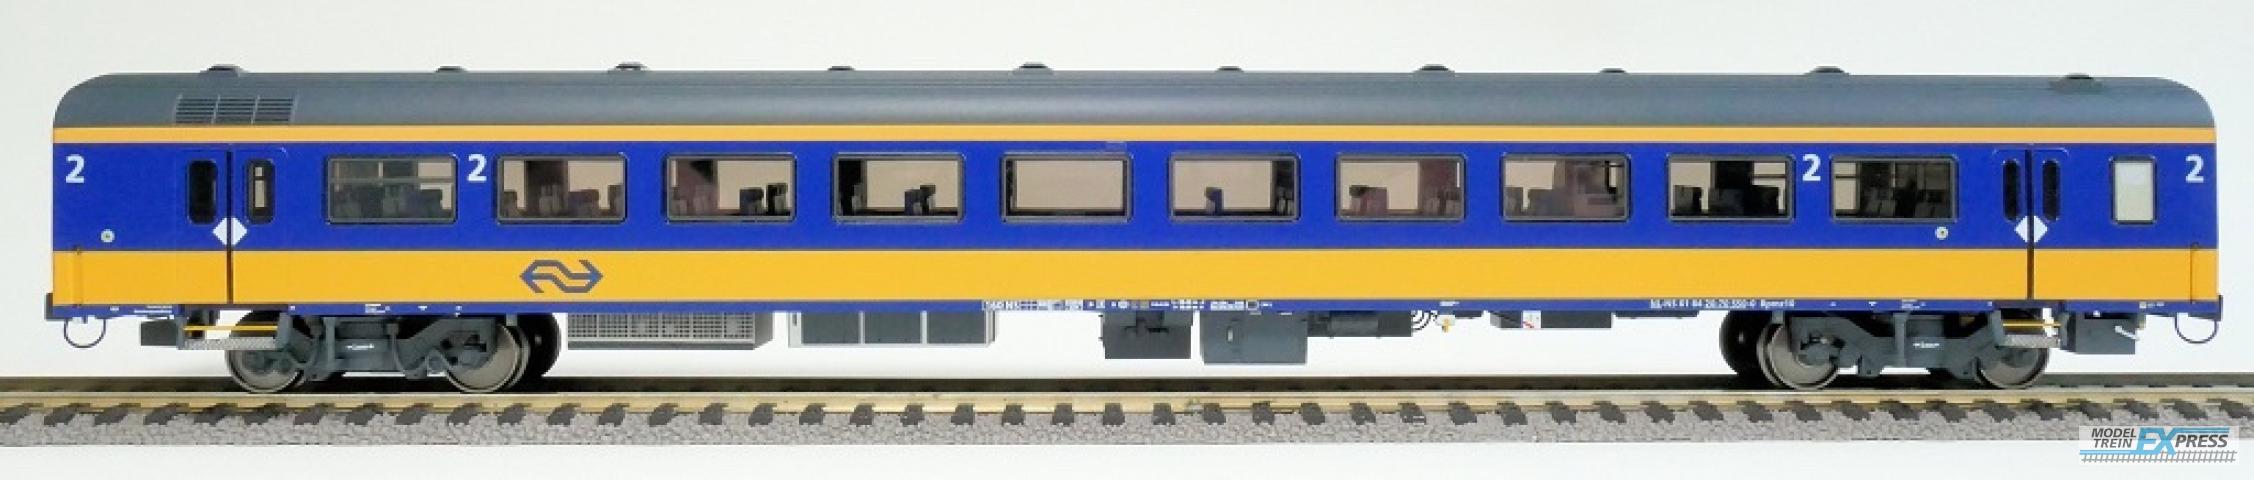 Exact-train 11010 NS ICRm Amsterdam - Rotterdam für den Inlandseinsatz Reisezugwagen Bpmz10 (Farbe Gelb / Blau) , Ep. VI